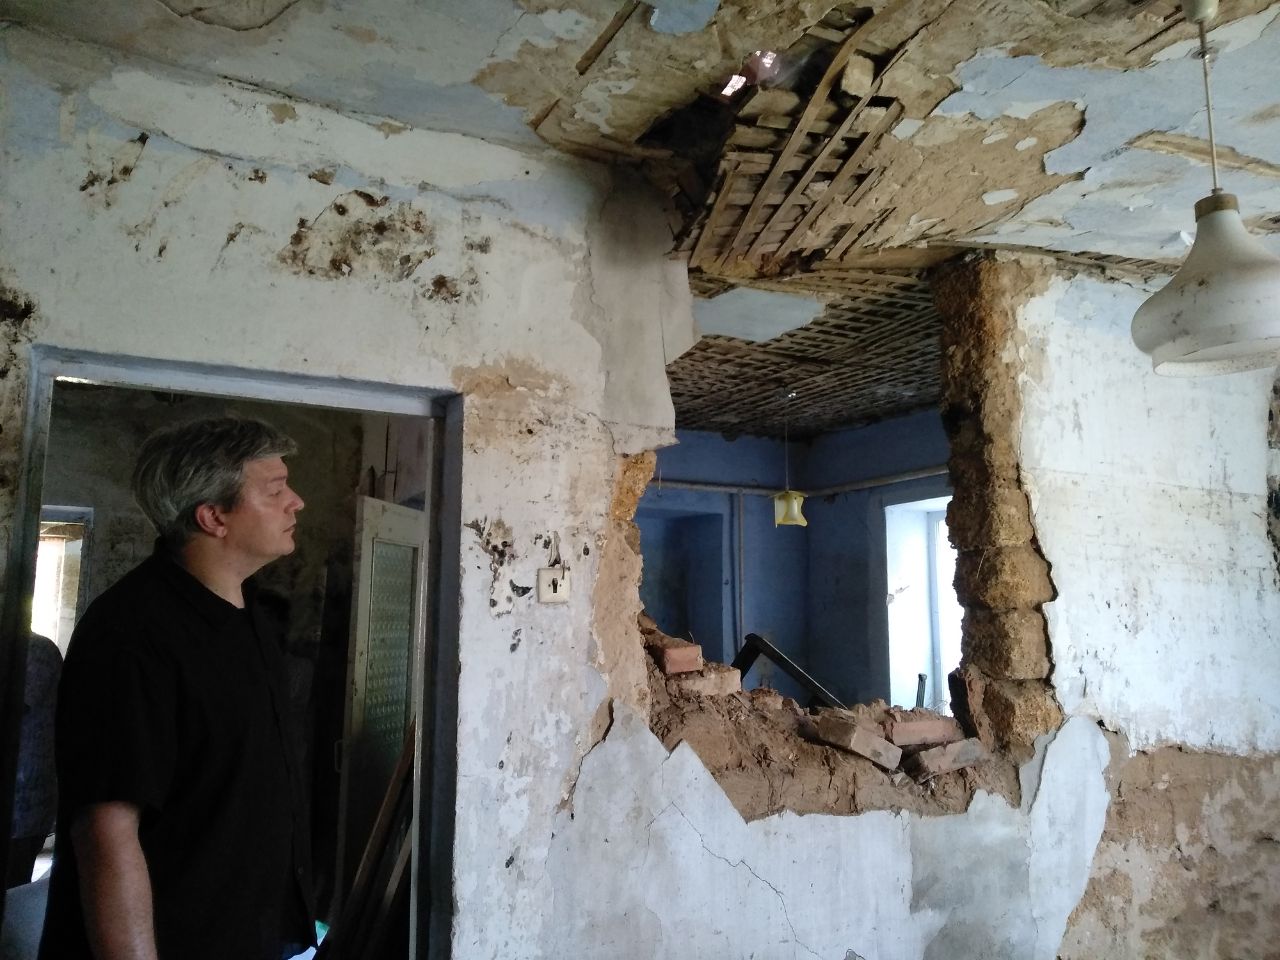 Продовжується робота щодо проведення комісійних обстежень пошкодженого майна внаслідок підтоплення, спричиненого підривом дамби Каховської ГЕС.